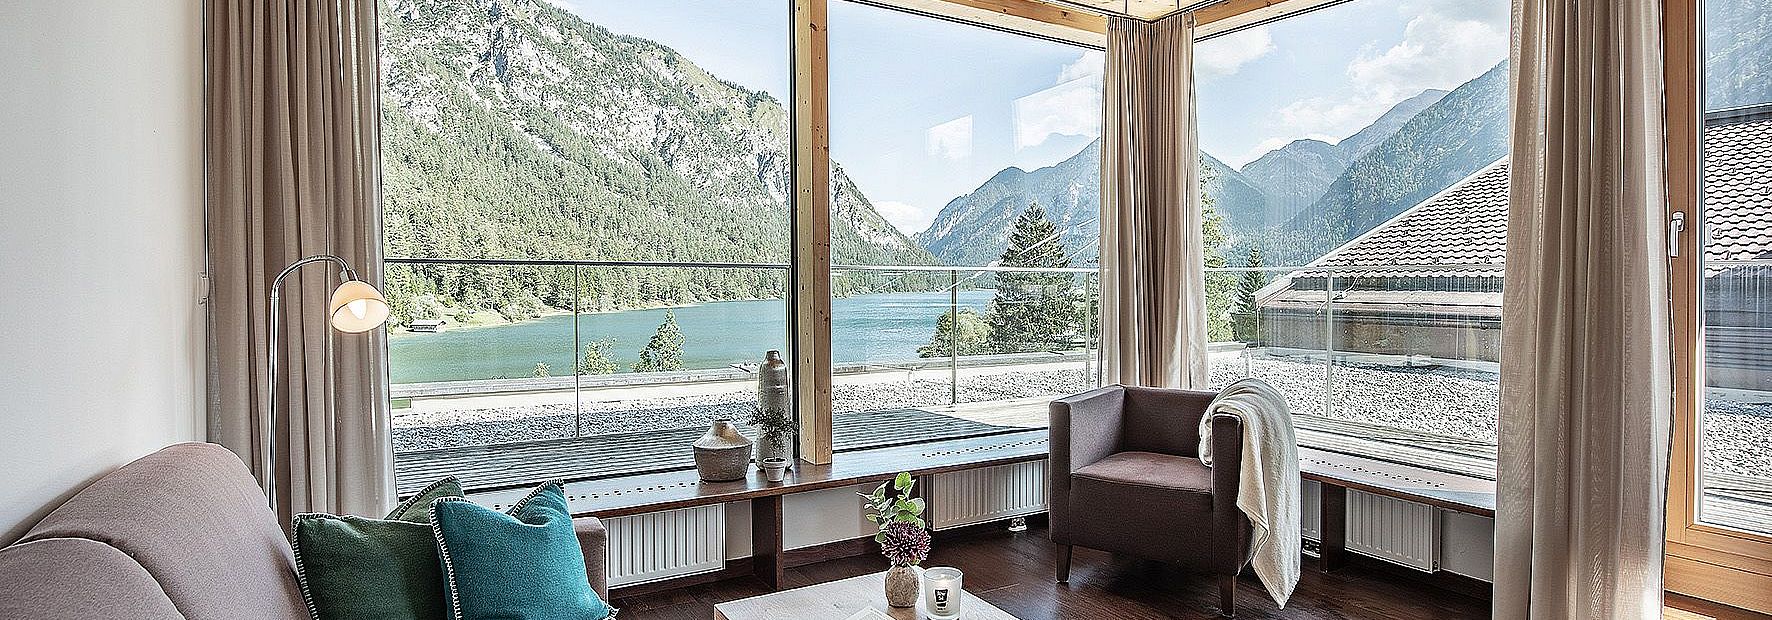 Zimmer mit Terrasse und Panoramablick auf den Heiterwanger See und die Berge im Sommer